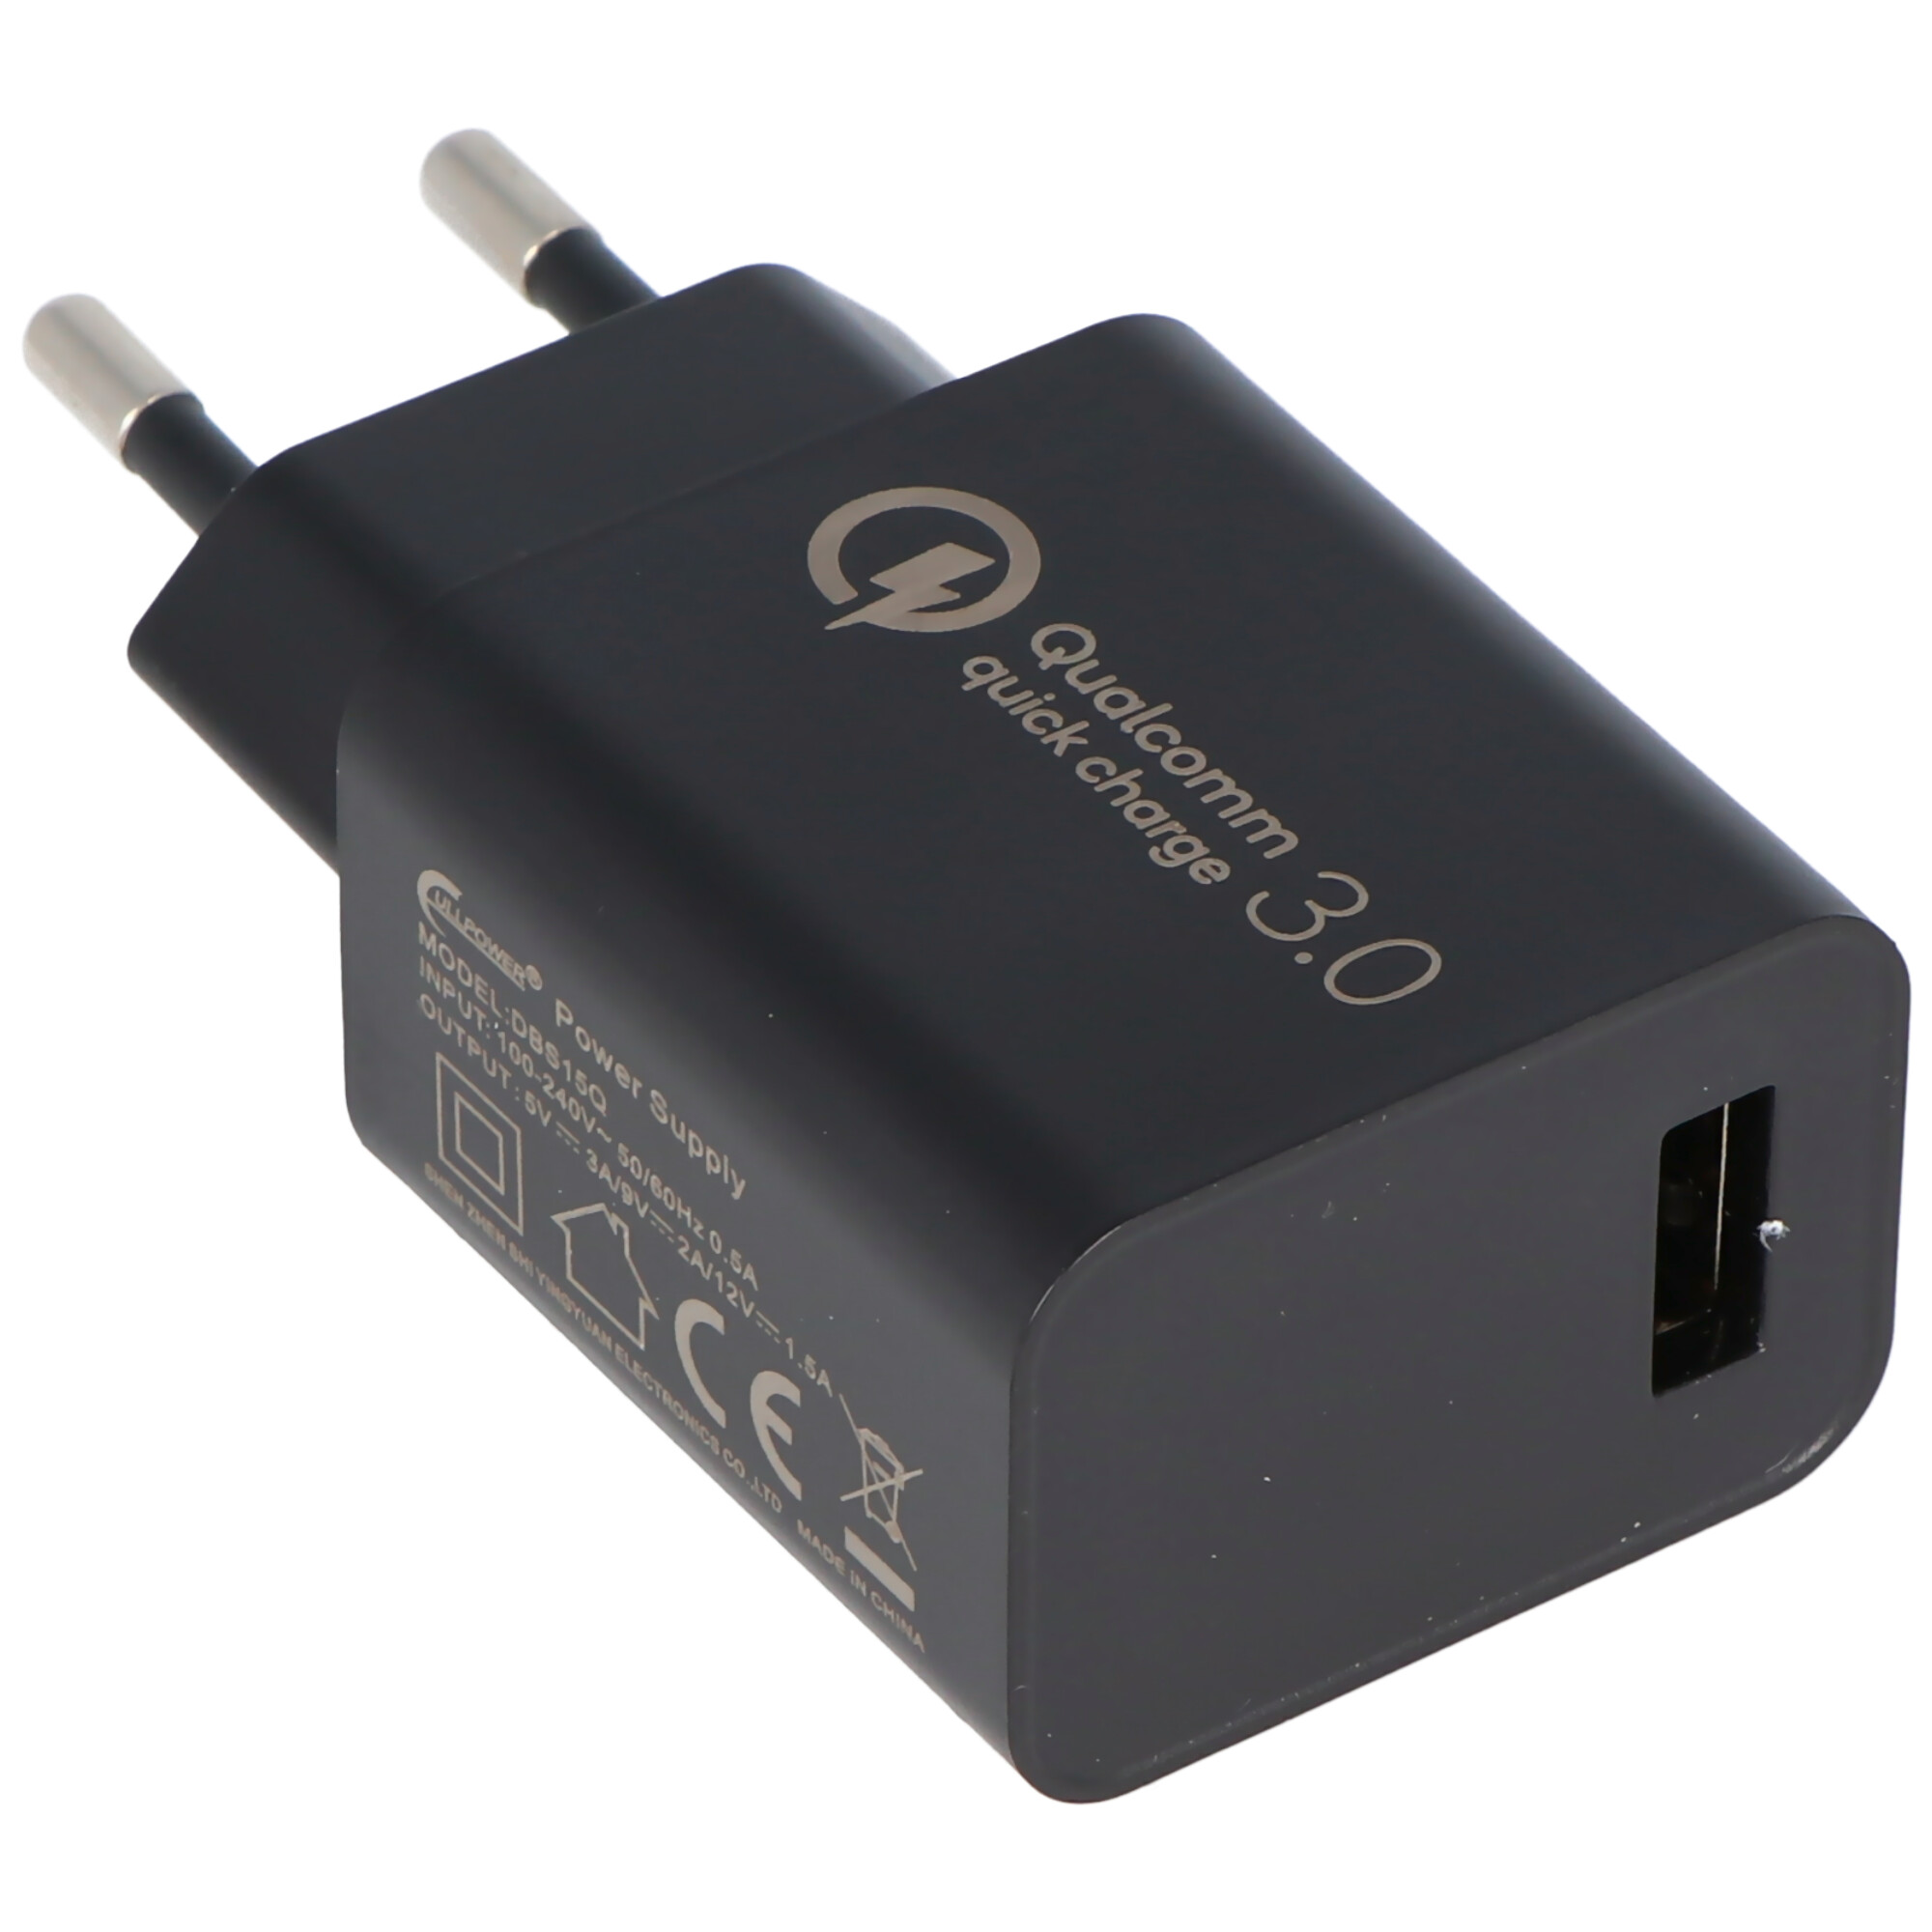 Chargeur rapide USB DUO 5V 3A - Chargeur rapide USB pour